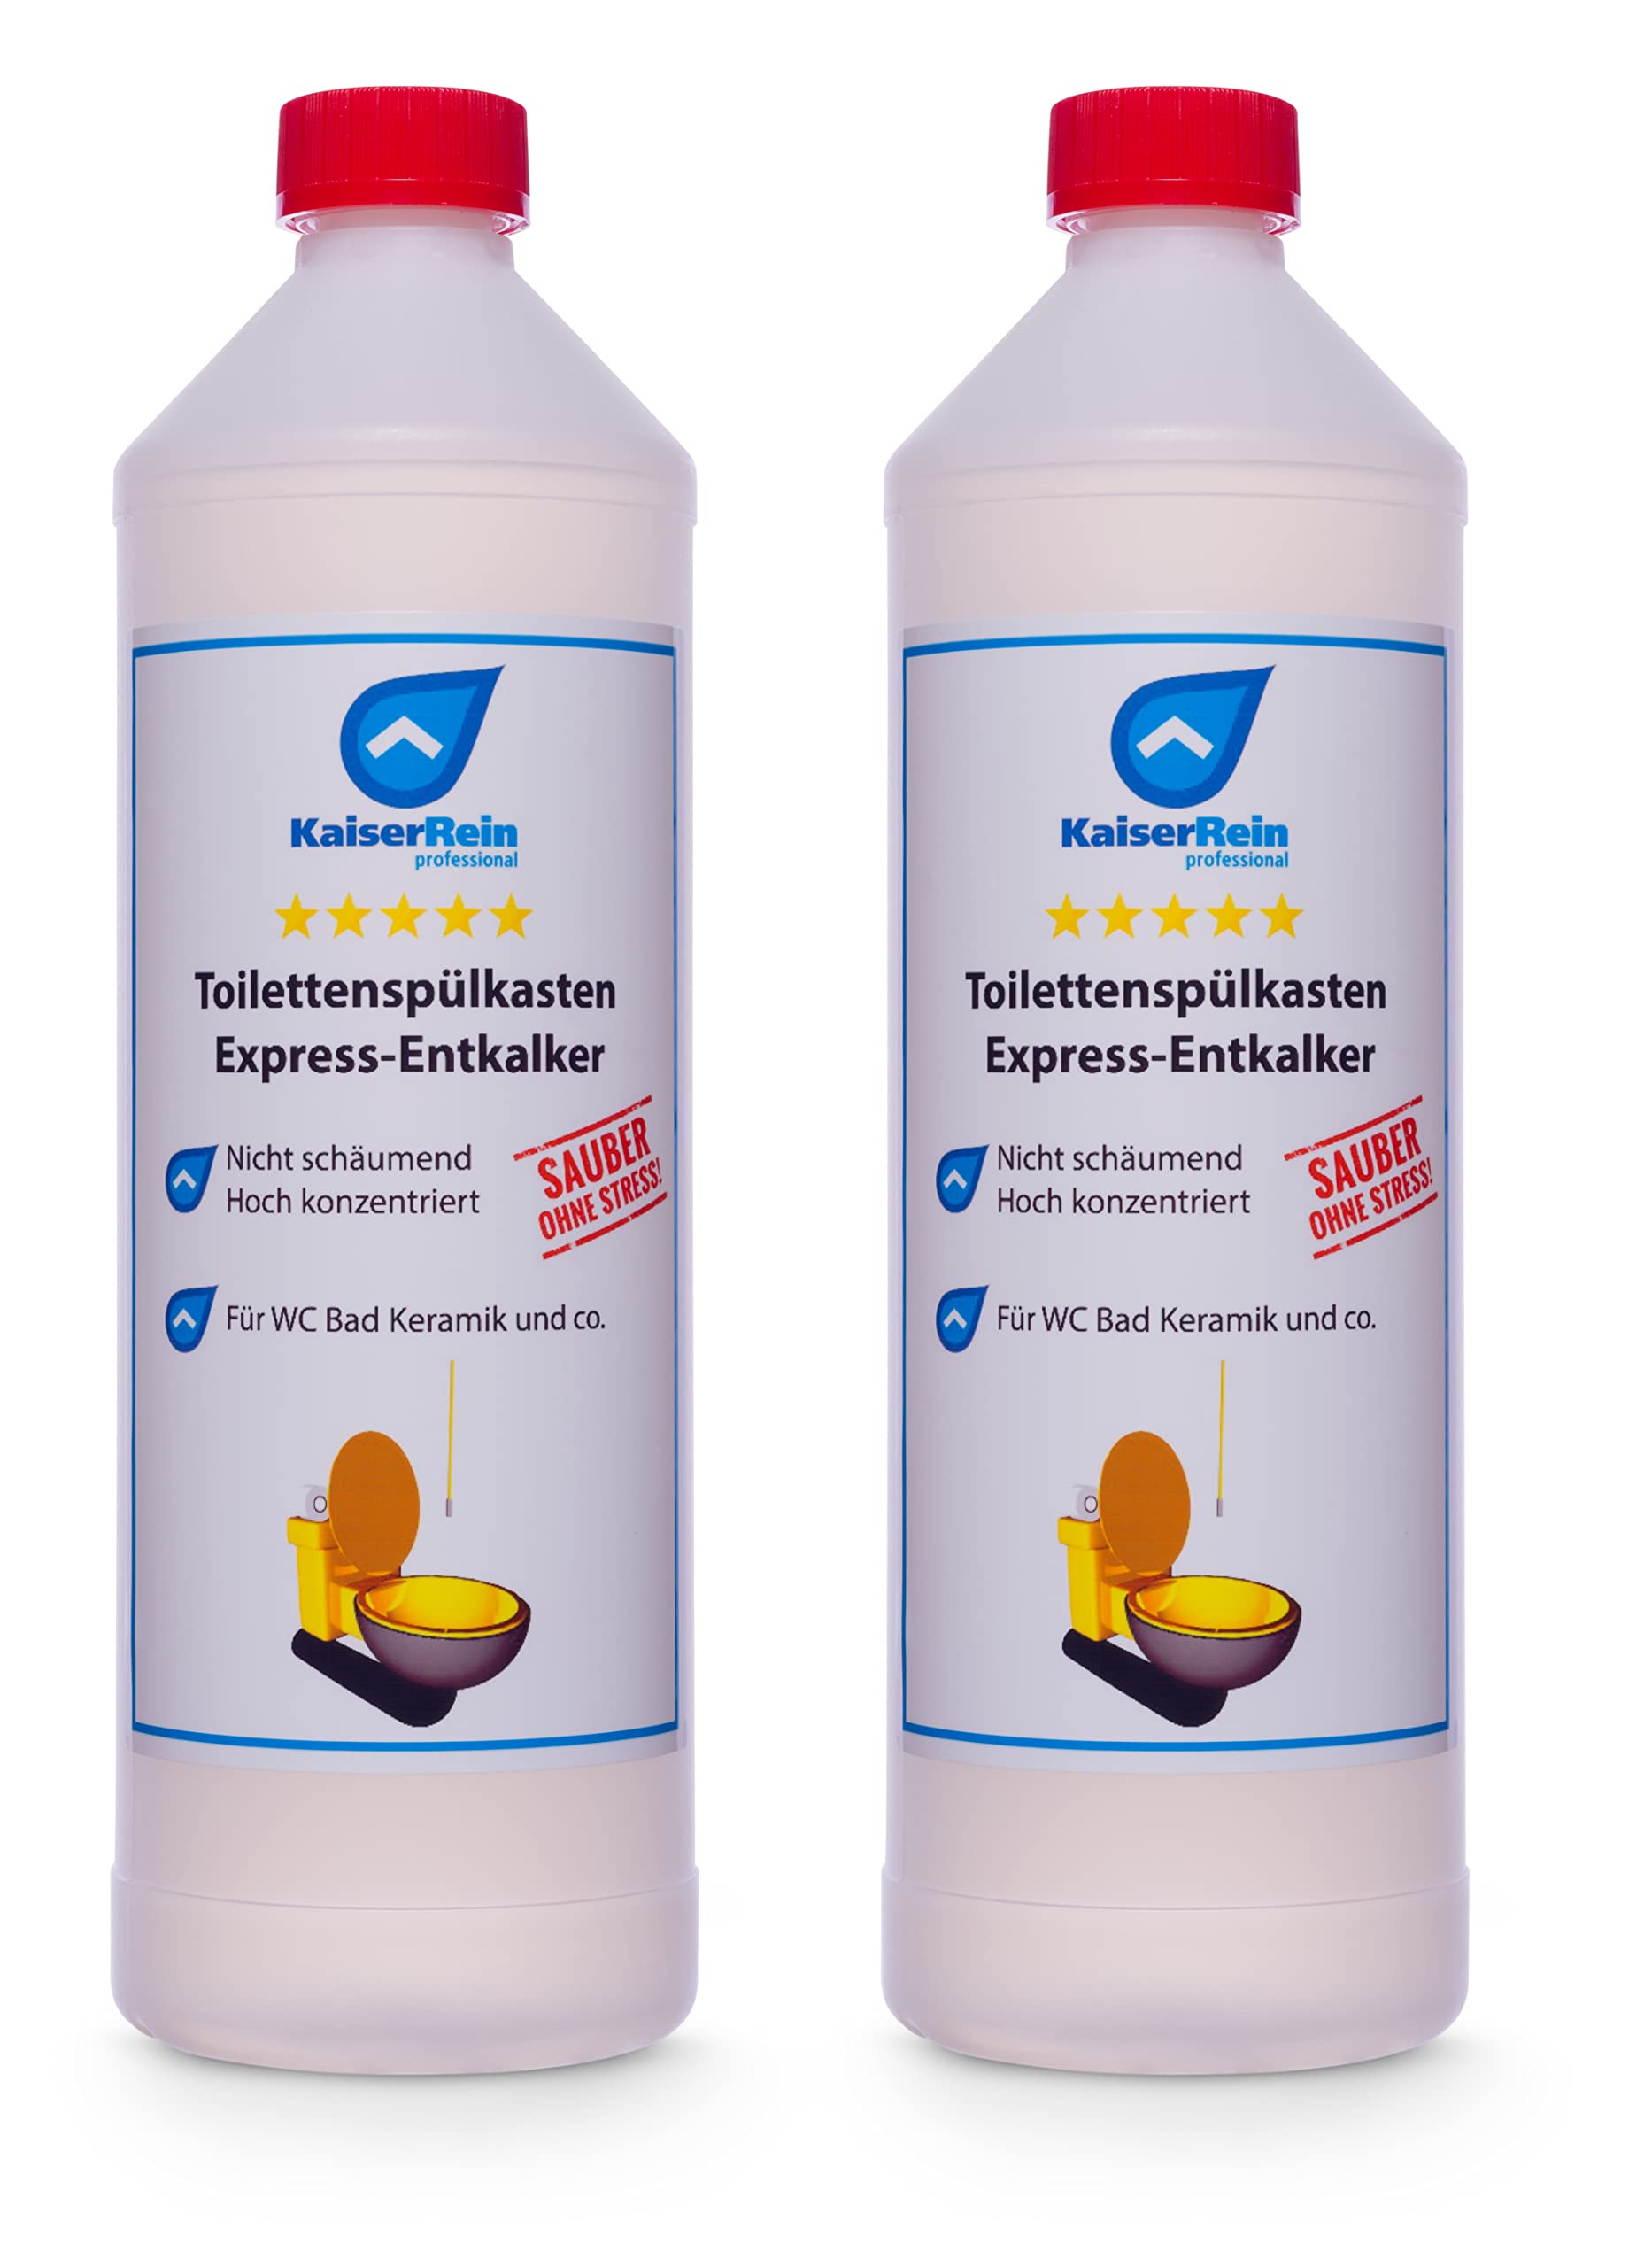 KaiserRein Toilettenspülkasten Express-Entkalker 2x 1L - Extra starker Kalklöser für Kalkablagerungen in WC, Spülkästen und Keramik, Entkalker, Spülkasten Reiniger